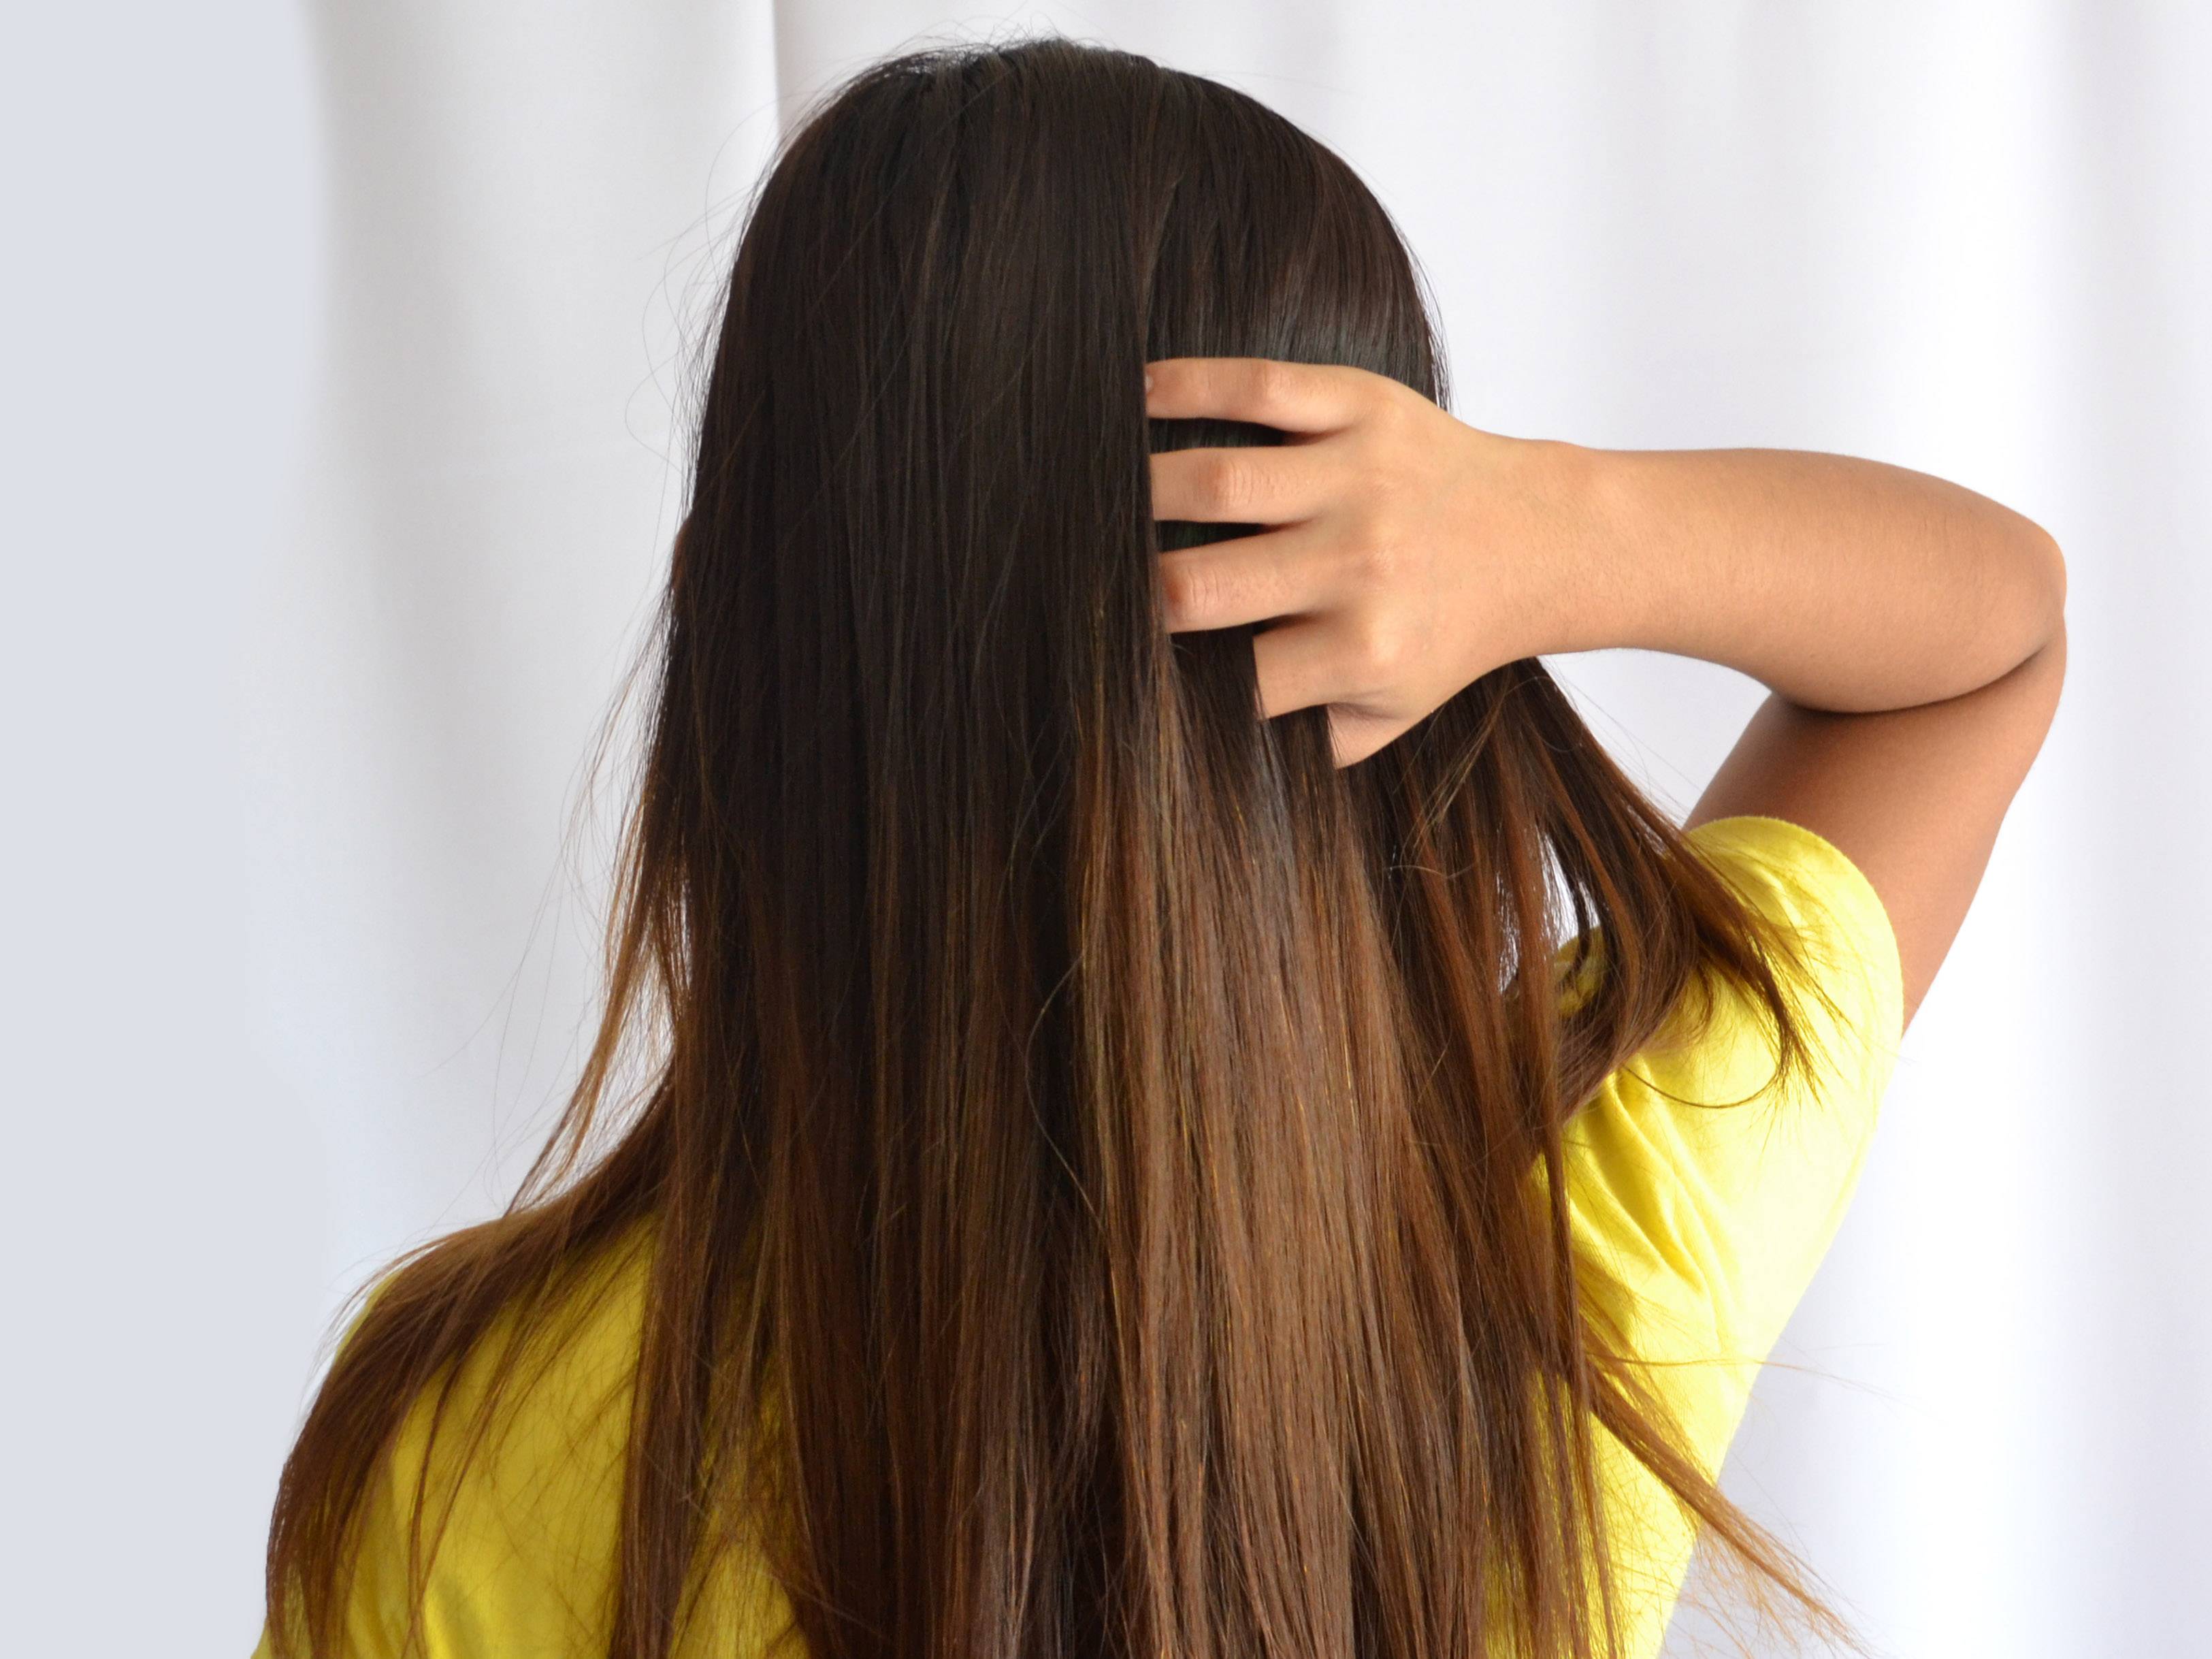 هشت راهکار ساده برای پیشگیری از آسیب مو